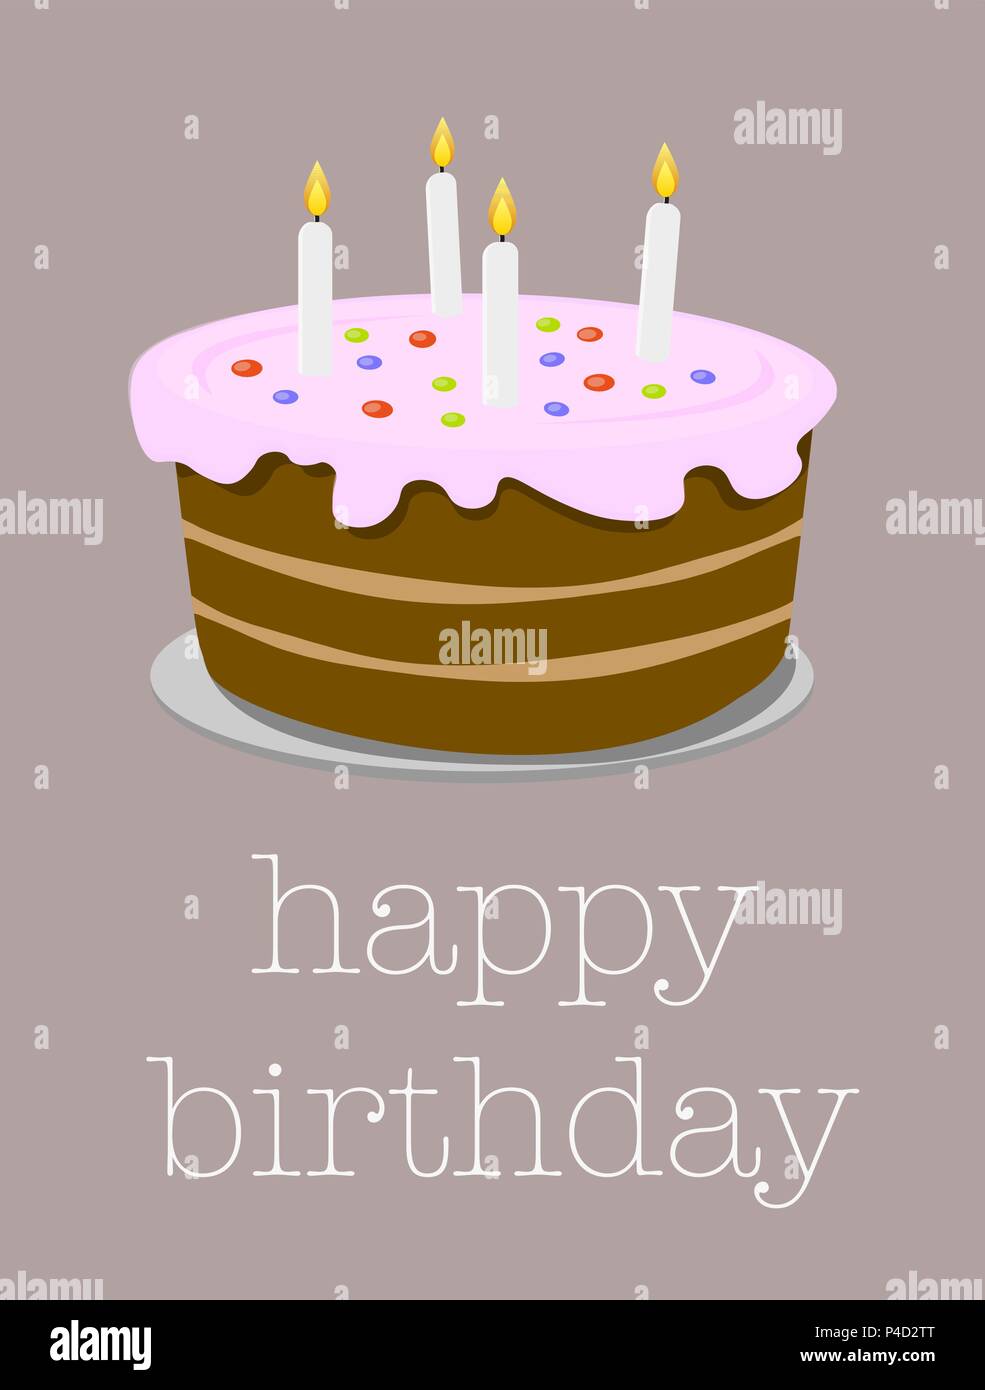 Geburtstag Grußkarte mit Geburtstag Kuchen Abbildung Stock Vektor